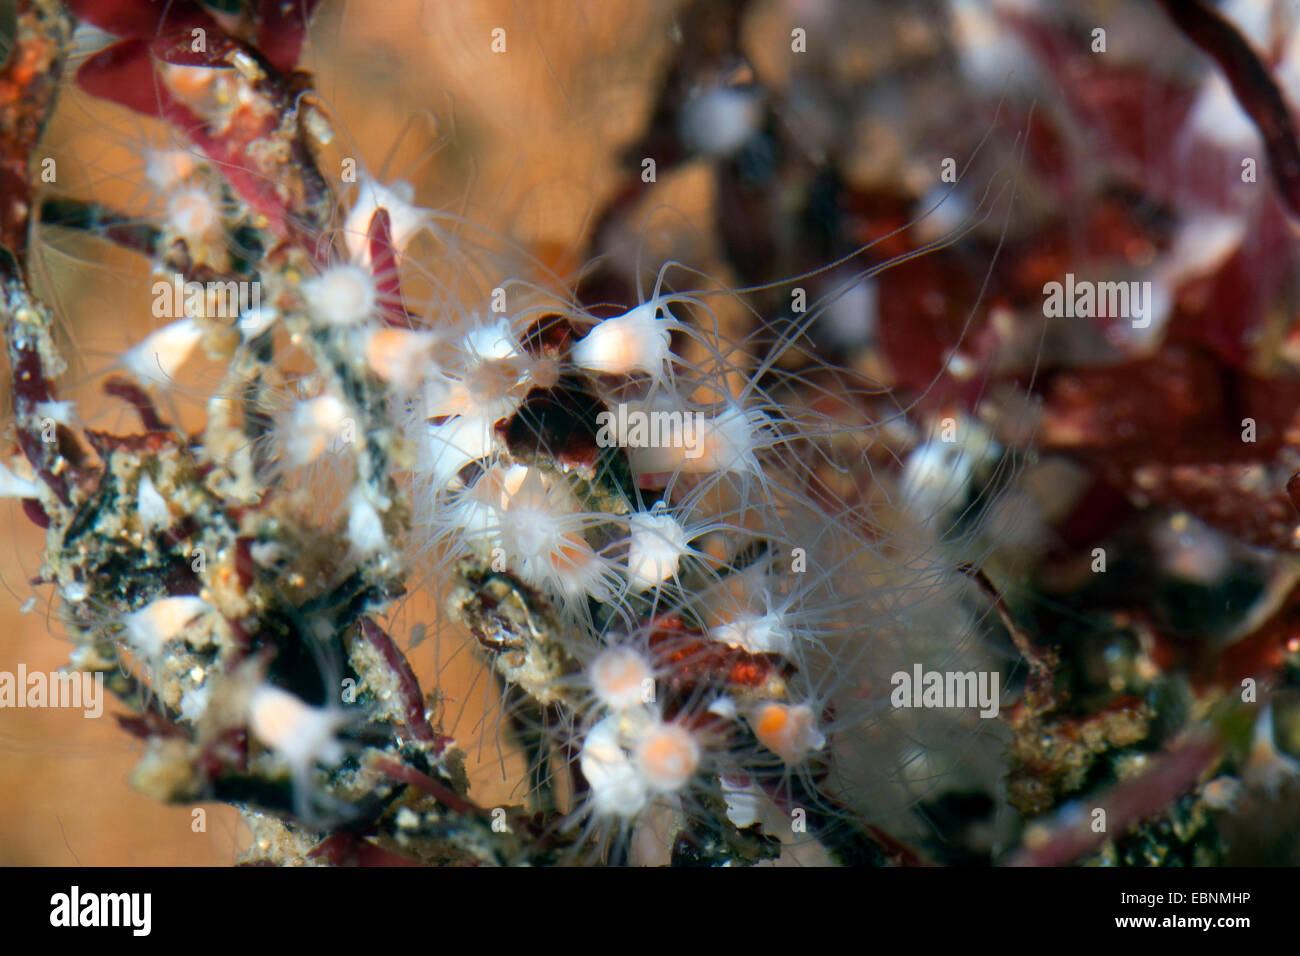 moon jelly, common jellyfish (Aurelia aurita), polyp stadium, Scyphistoma Stock Photo